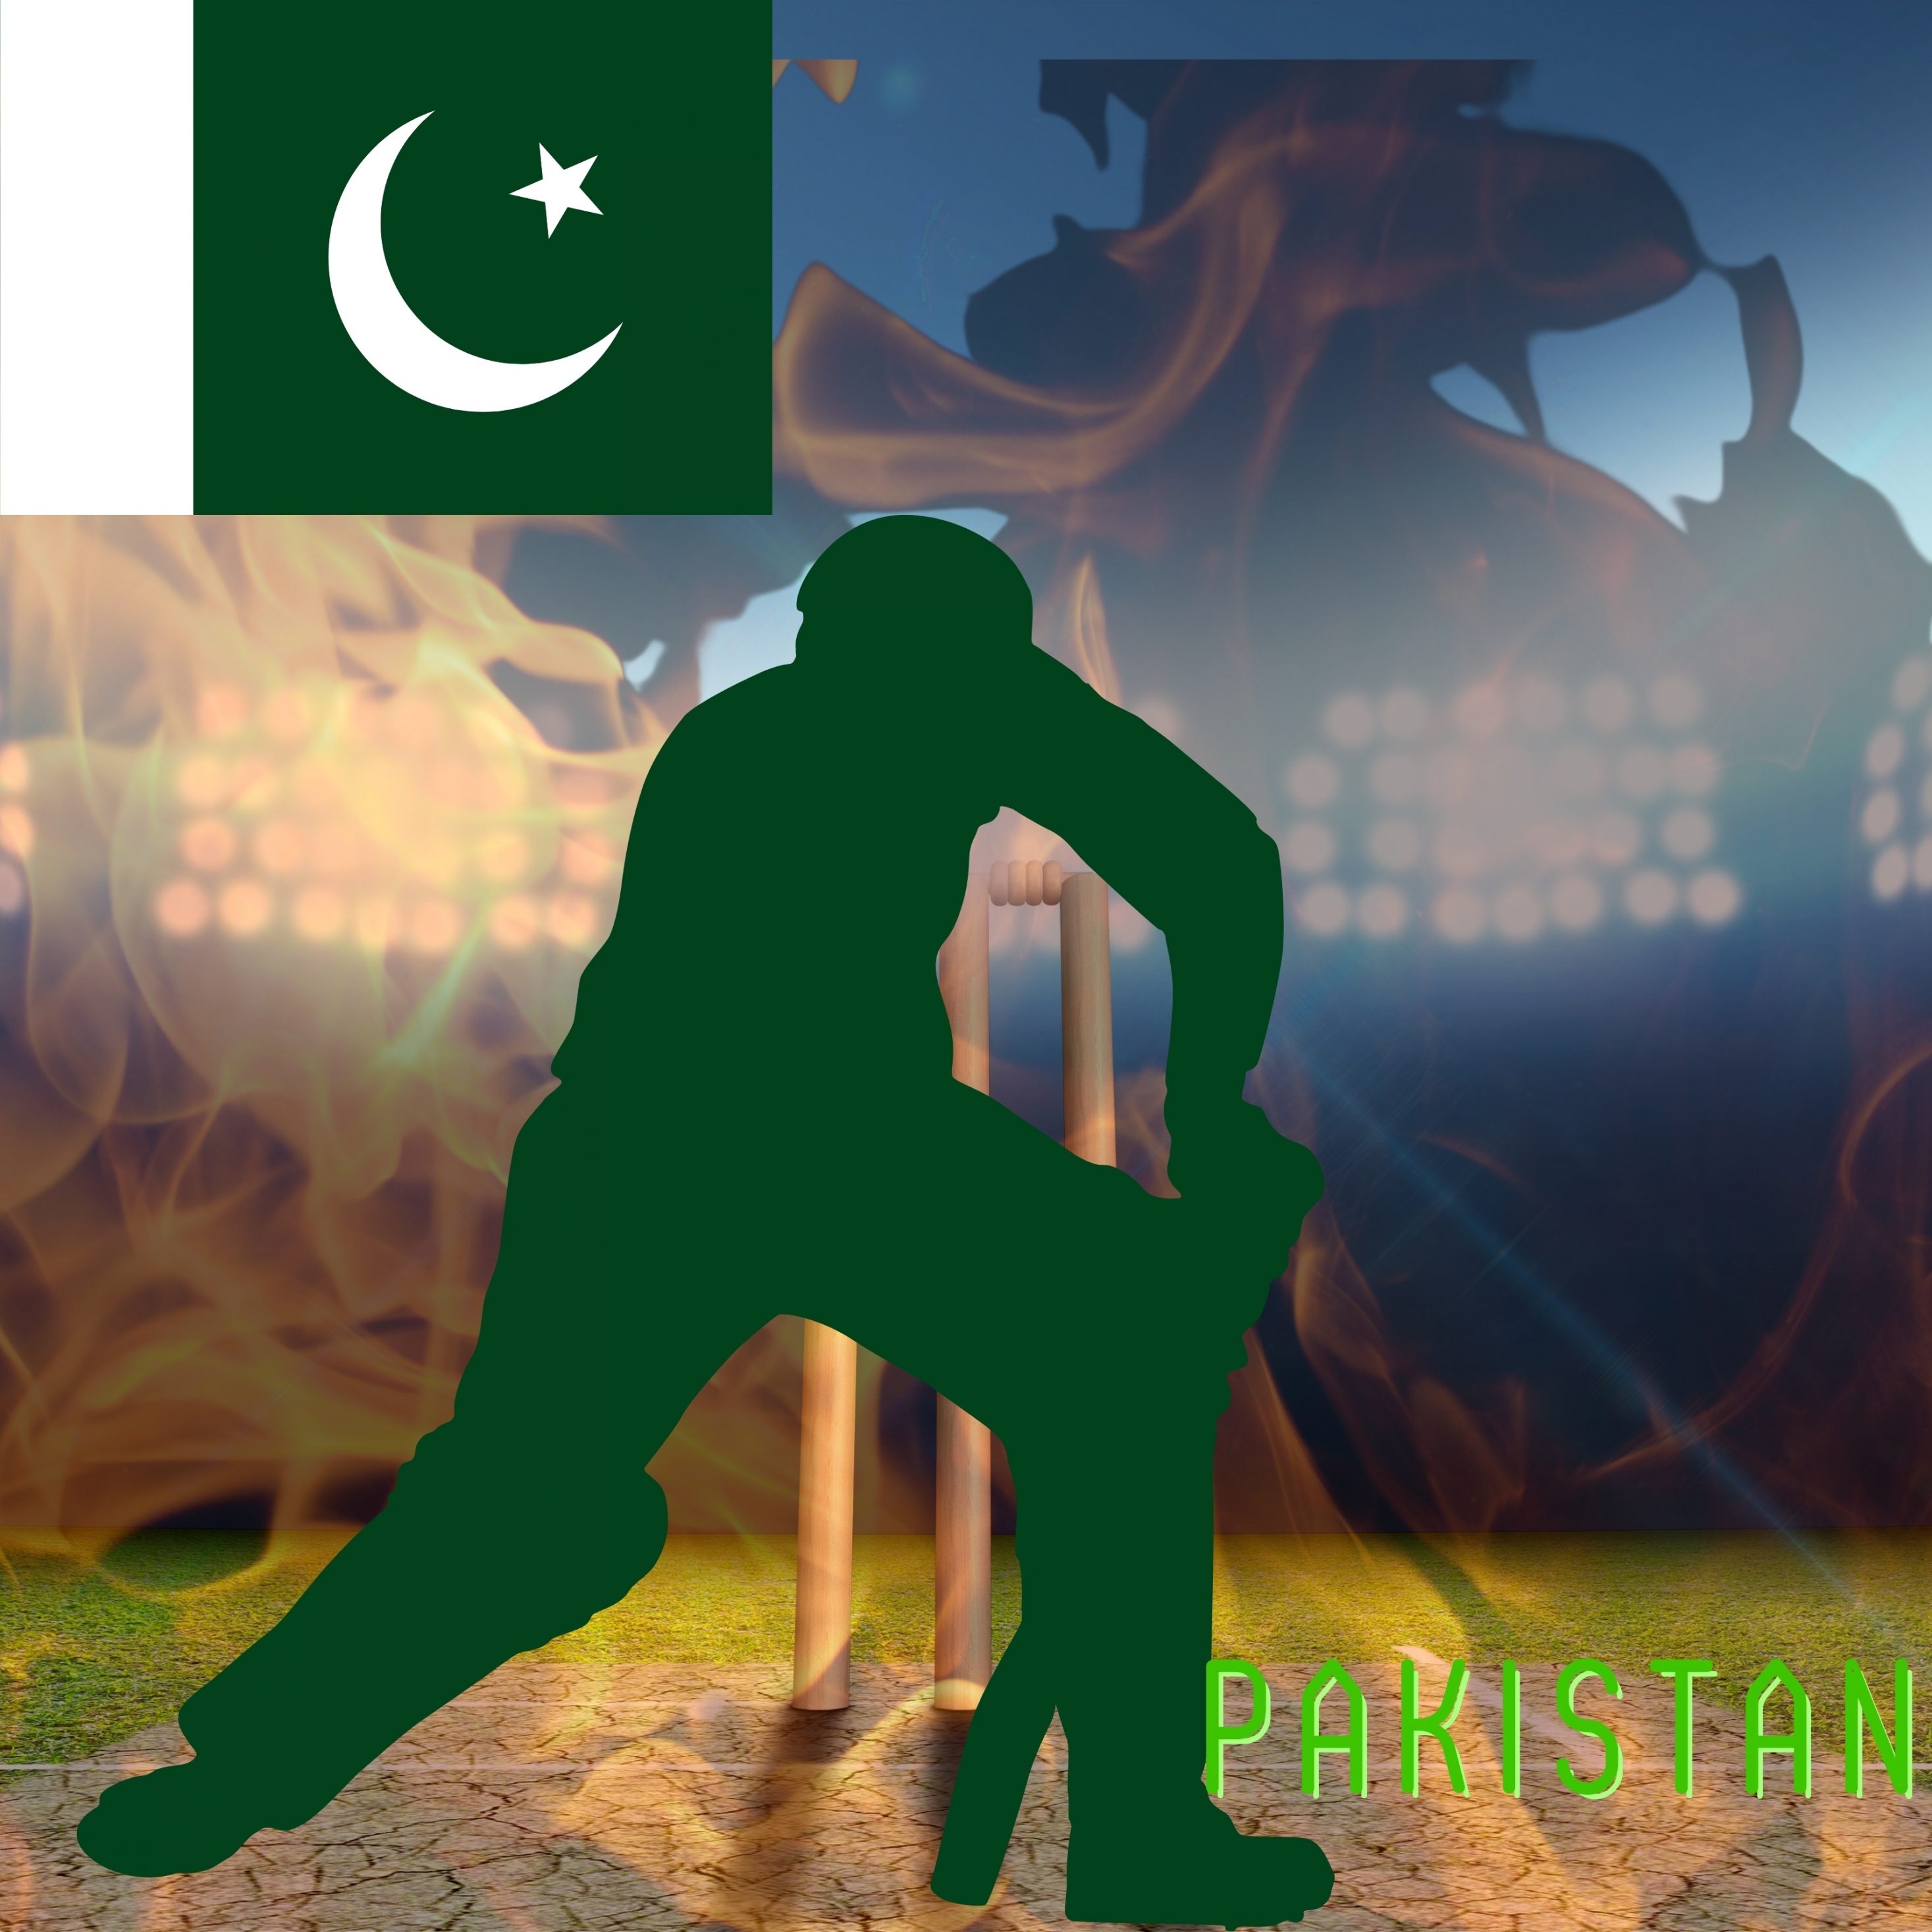 2934x2934 iOS iPad wallpaper 4k Pakistan Cricket Stadium iPad Wallpaper 2934x2934 pixels resolution